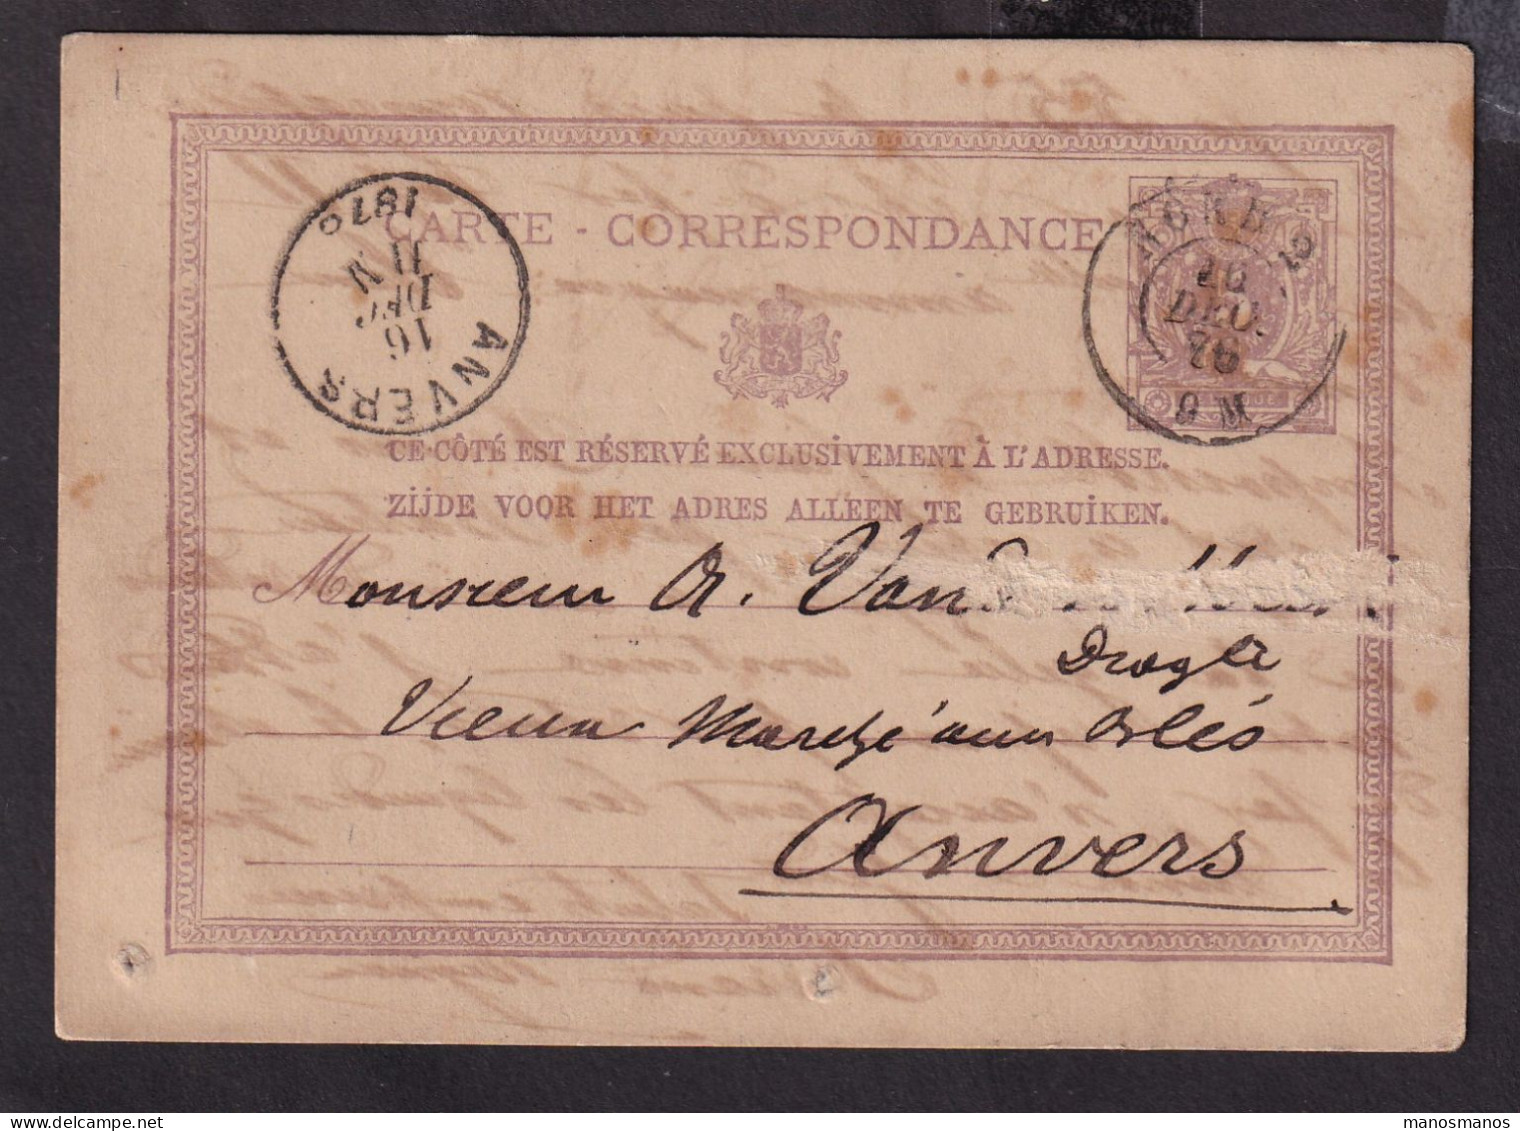 DDFF 183 --  Entier Postal Lion Couché Double Cercle AMBULANT NORD 2 1876 De BXL à ANVERS - Coba 30 EUR S/TP Détaché - Ambulanti